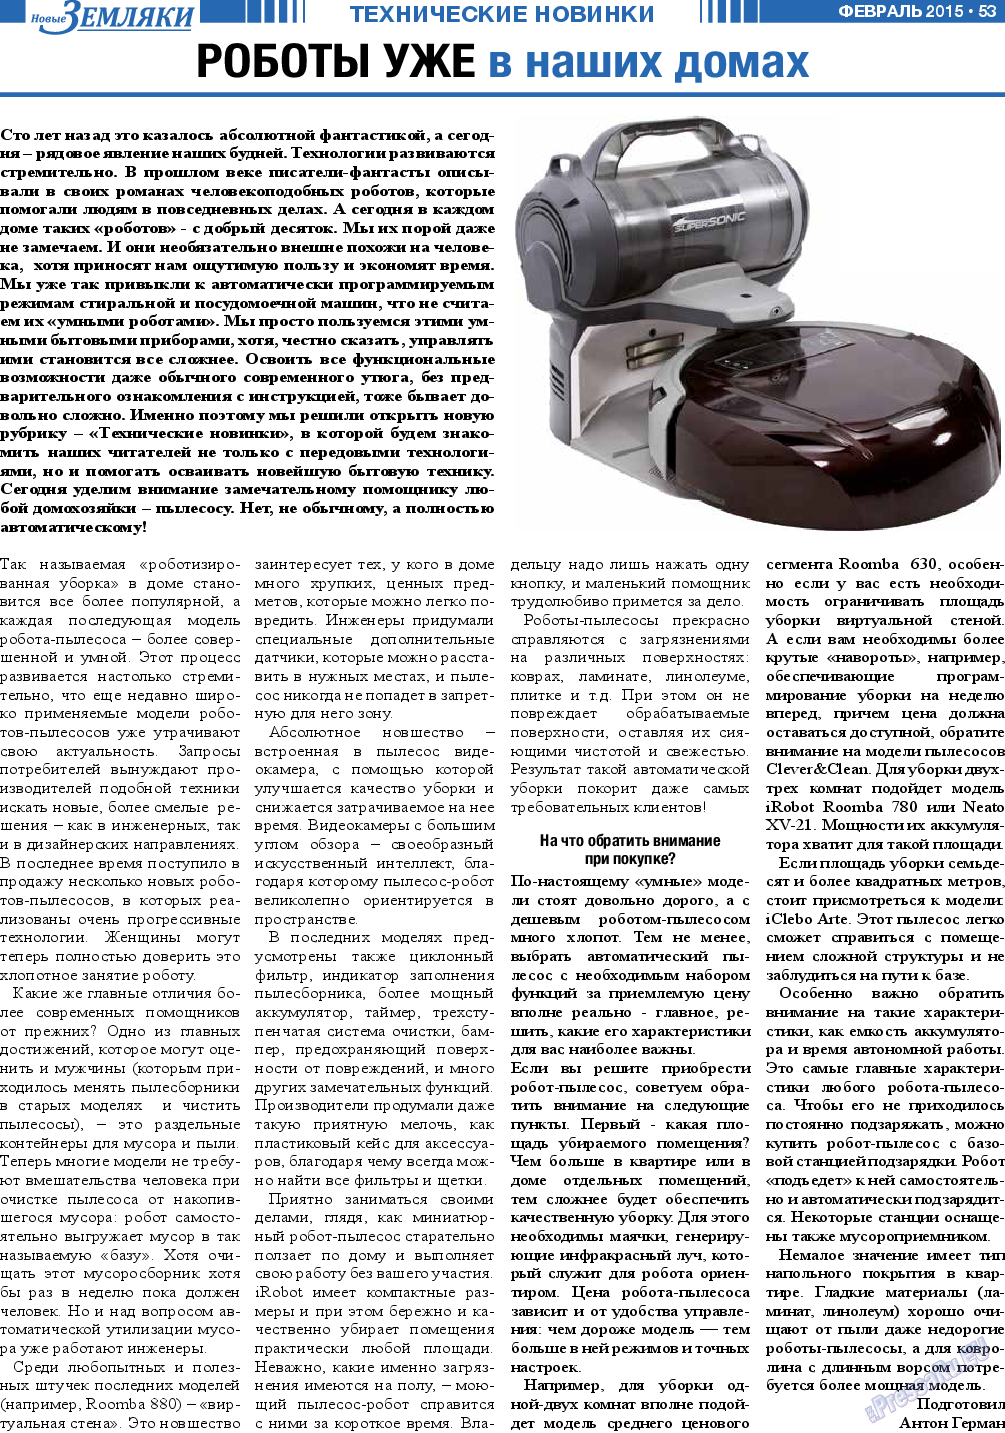 Новые Земляки, газета. 2015 №2 стр.53